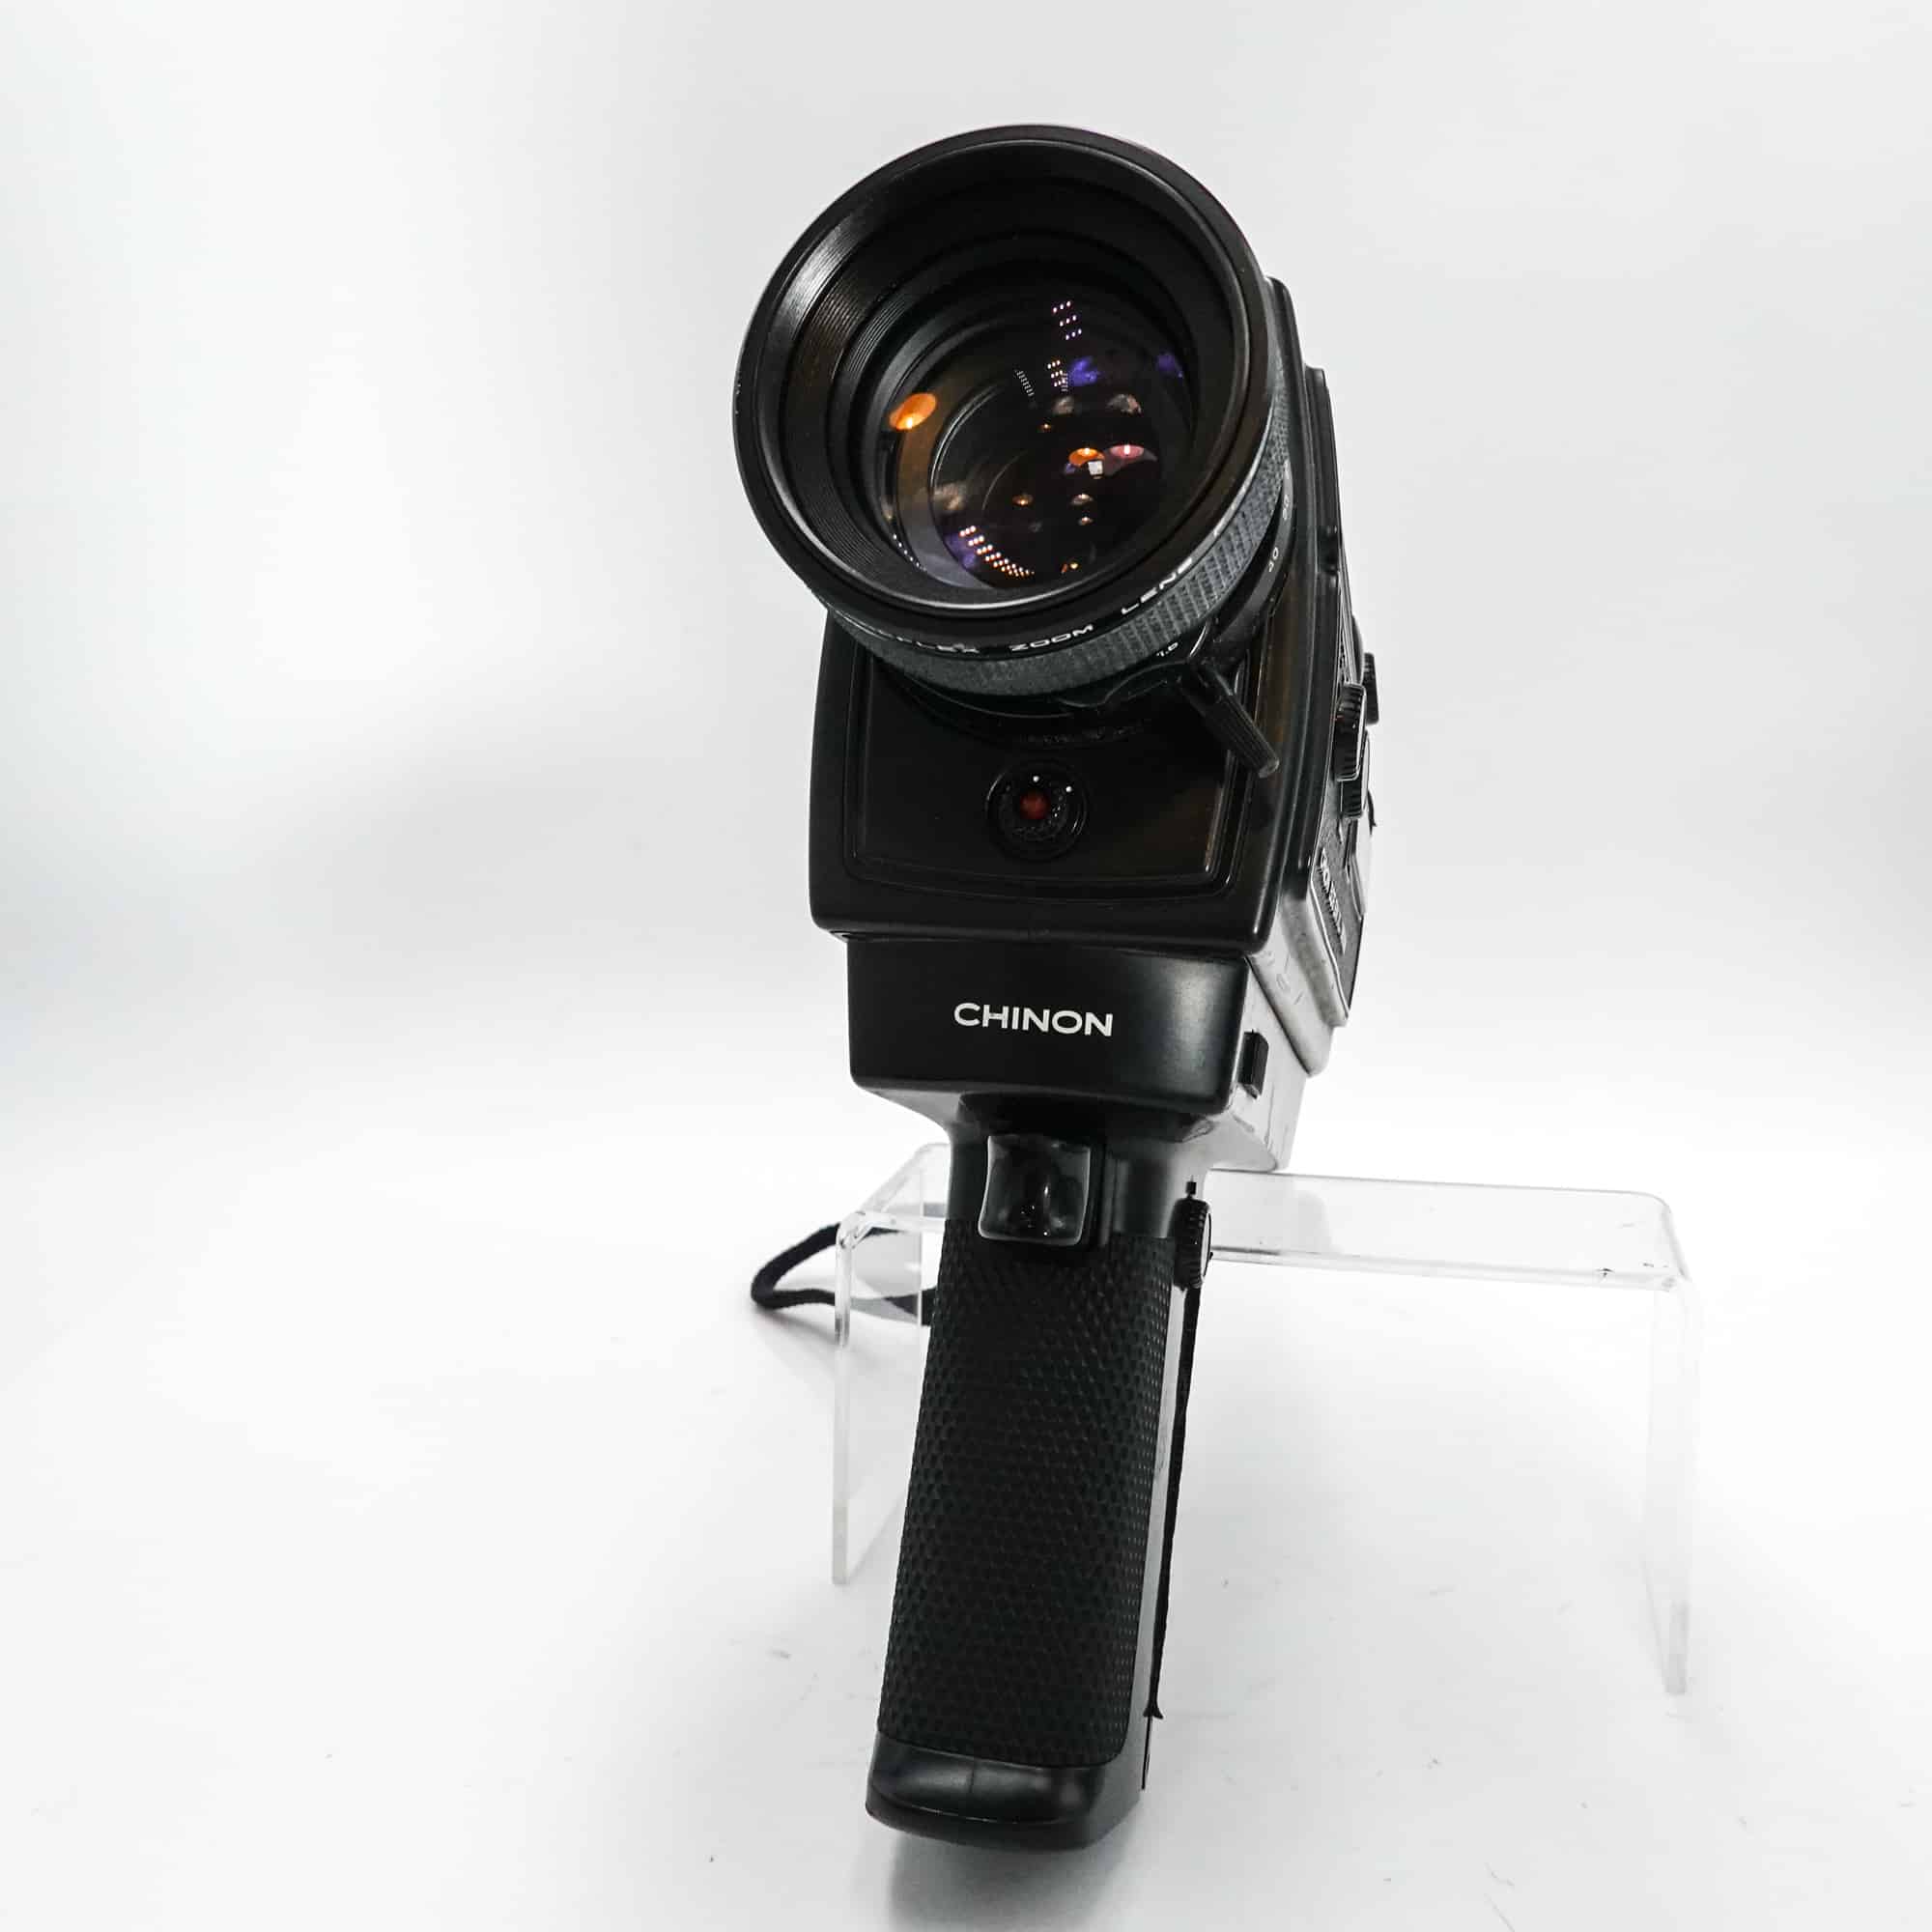 Chinon 506 SM XL Super 8 Camera